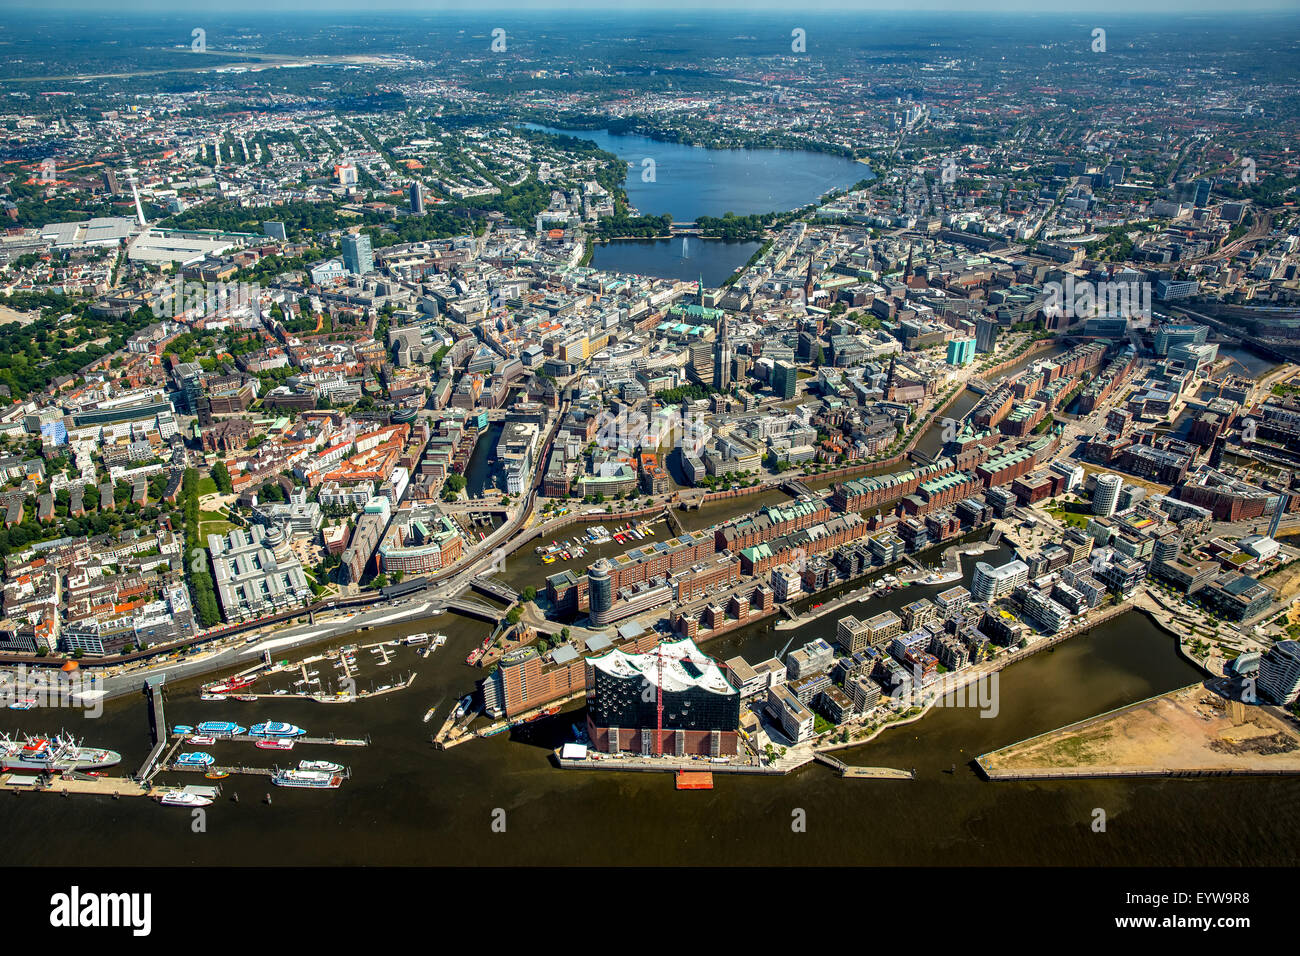 Elbphilharmonie, HafenCity, Speicherstadt, UNESCO-Weltkulturerbe, der Hamburger Hafen, Elbe, Hamburg, Deutschland Stockfoto